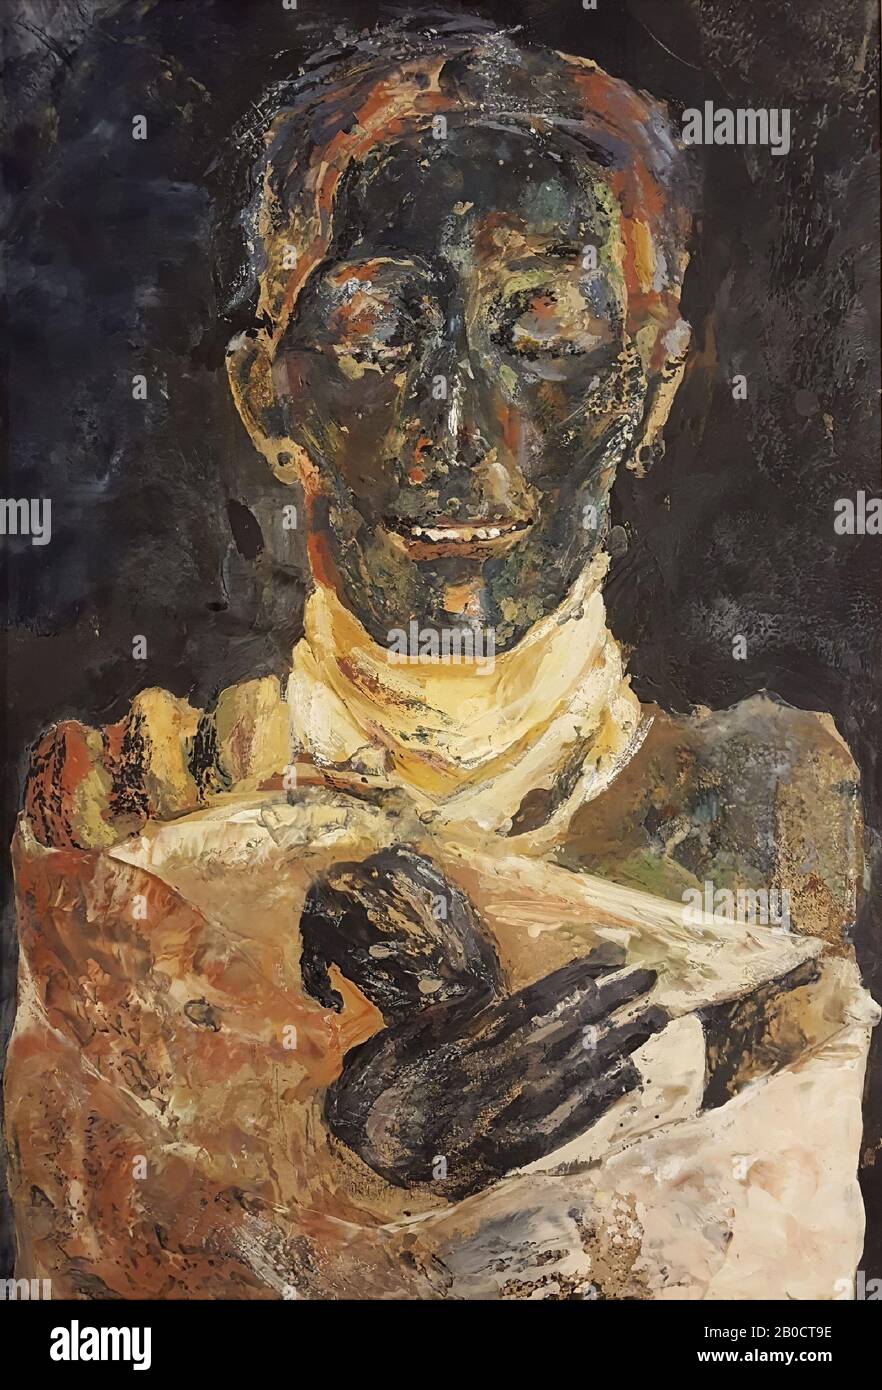 Thutmosis IV, Pittura dell'artista Riky Schellart-van Deursen (1942-2013), formato ritratto, raffigurante la mummia del re di Thutmosis IV nel Museo Egizio del Cairo (CG 61073). La mummia viene mostrata sdraiata e rivolta verso il basso. In figura è raffigurato il corpo superiore sotto un rivestimento a predominanza bianca con la testa e le mani scoperte, quest'ultima dipinta in tonalità scure, contro uno sfondo scuro., Dipinto in encaustico su pannello di pannelli duri, incorniciato in cornice di legno bianco. Contrassegnato sul retro con matita e penna a sfera: Riky Schellart-vDeursen Foto Stock